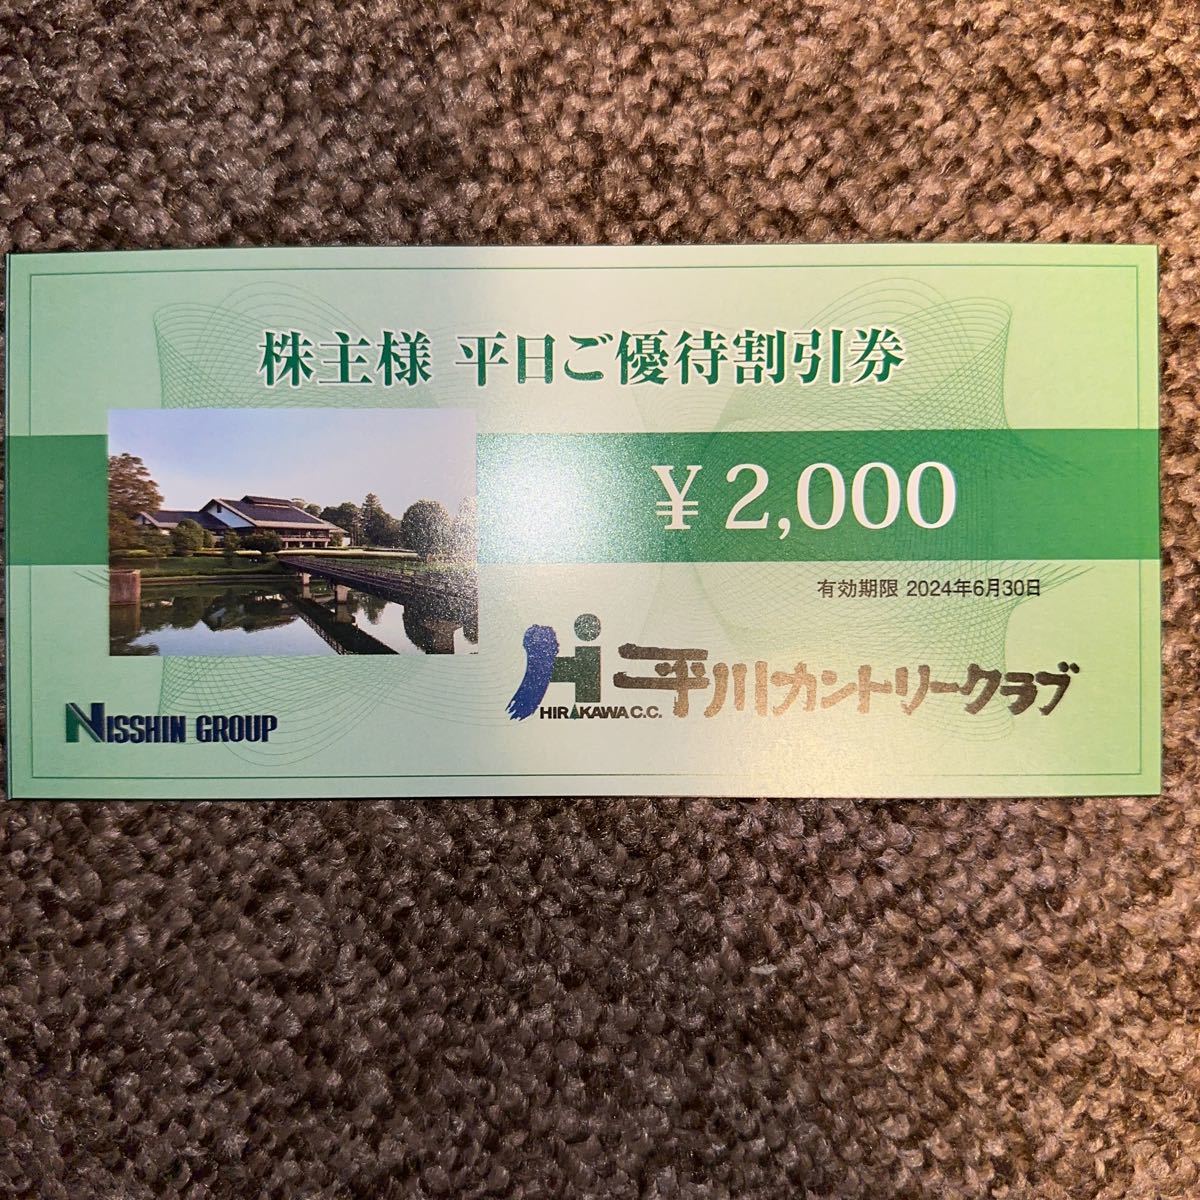  flat река Country Club 2000 иен льготный билет 4 шт. комплект 8000 иен минут 2024/6/30 до 